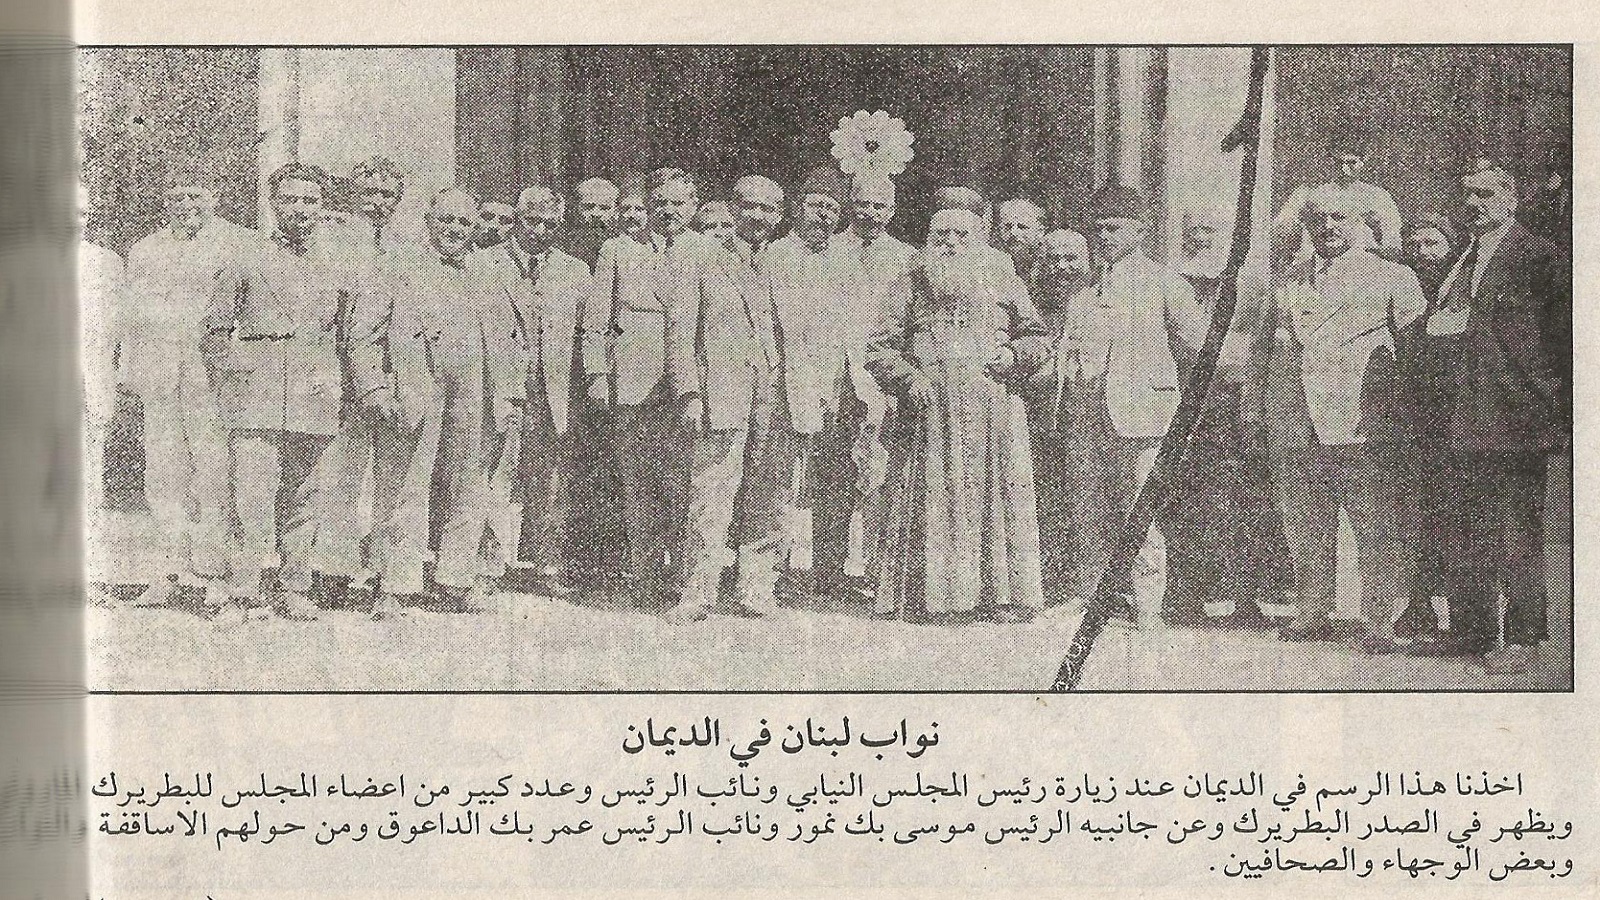 مع النواب في الديمان، 1925,